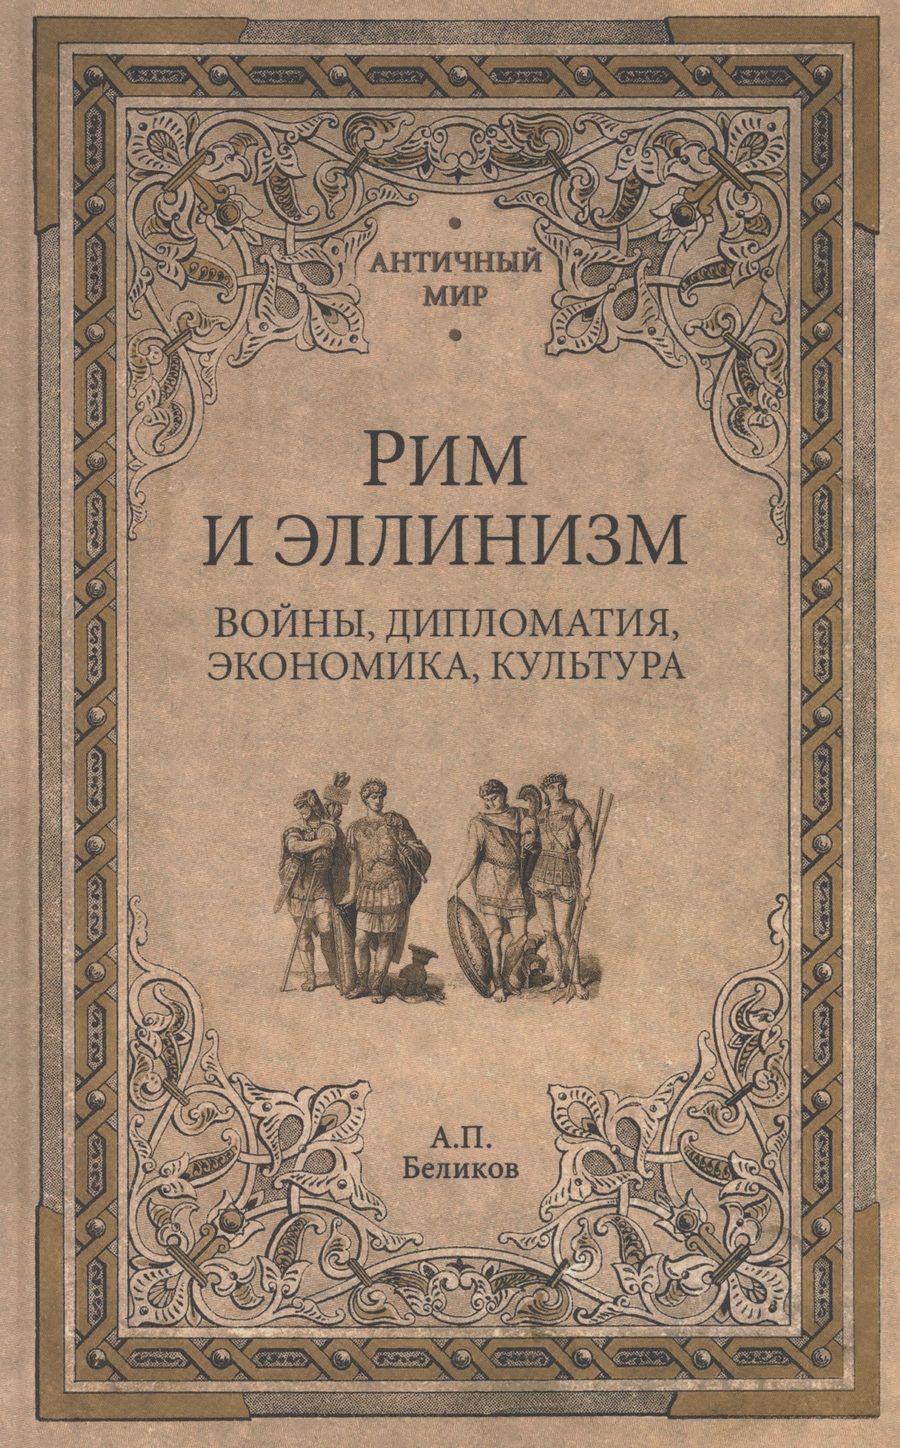 Обложка книги "Беликов: Рим и эллинизм. Войны, дипломатия, экономика, культура"